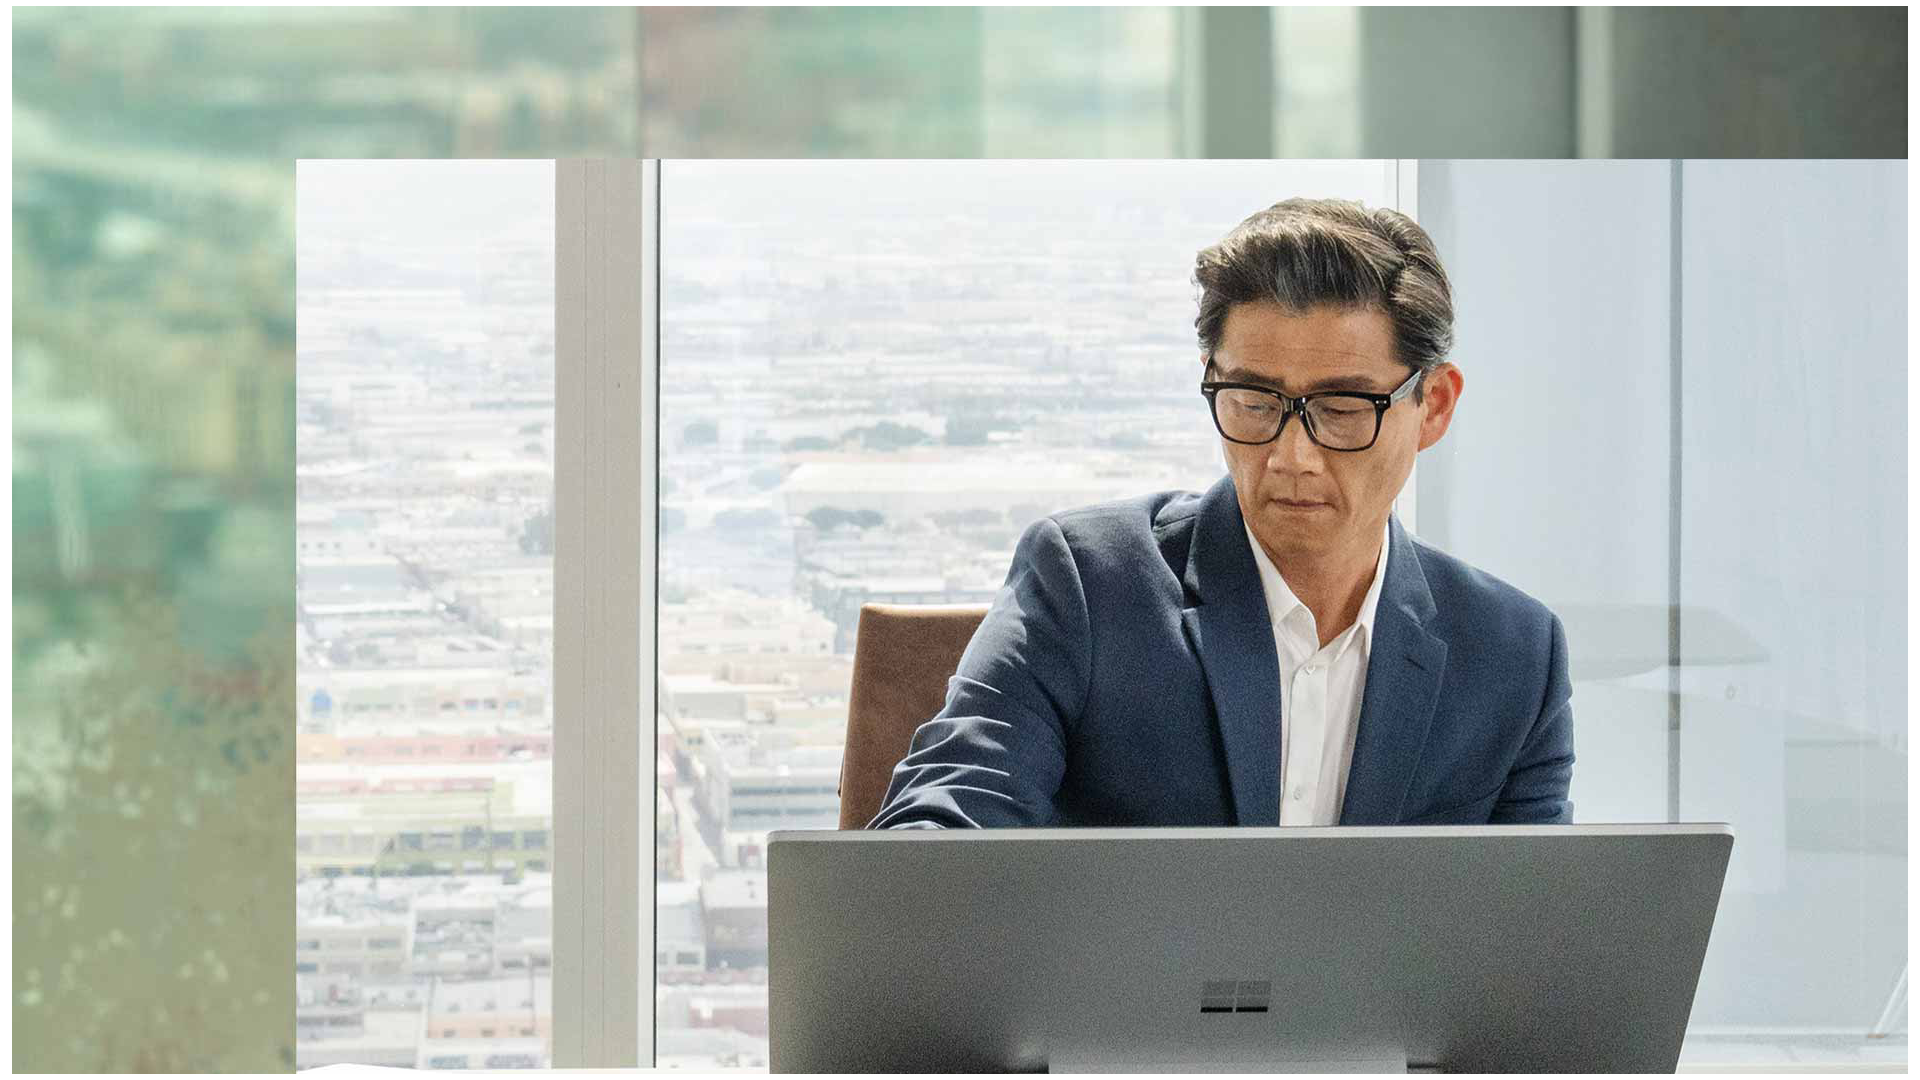 شخص يجلس أمام جهاز Surface Studio 2+‎ في مبنى مكاتب شاهق. تتراءى المدينة في الخلفية.